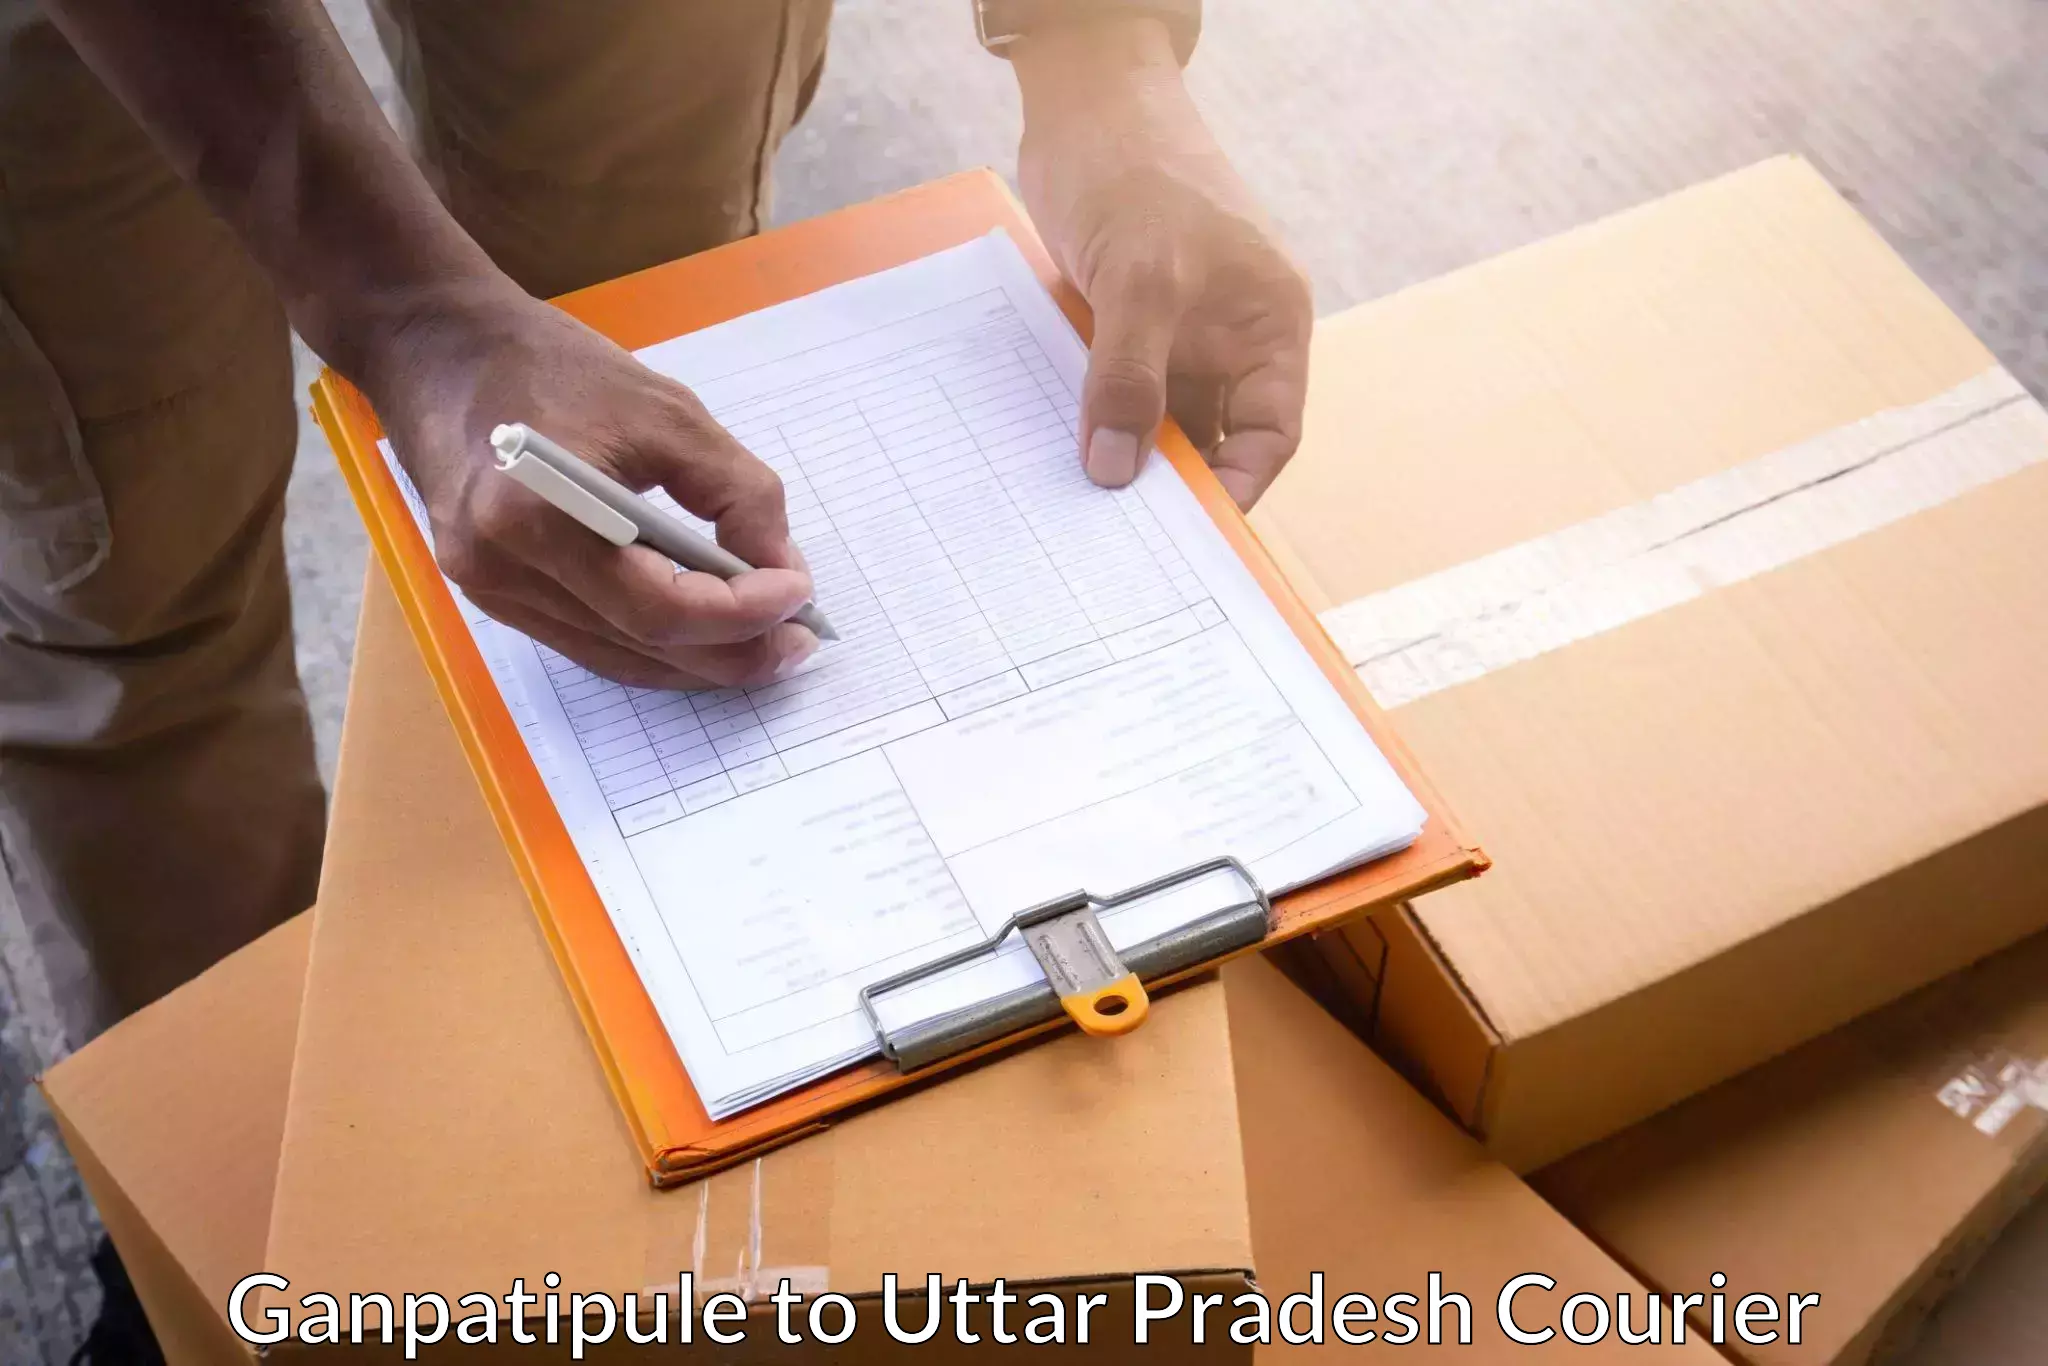 Reliable parcel services Ganpatipule to Lalitpur